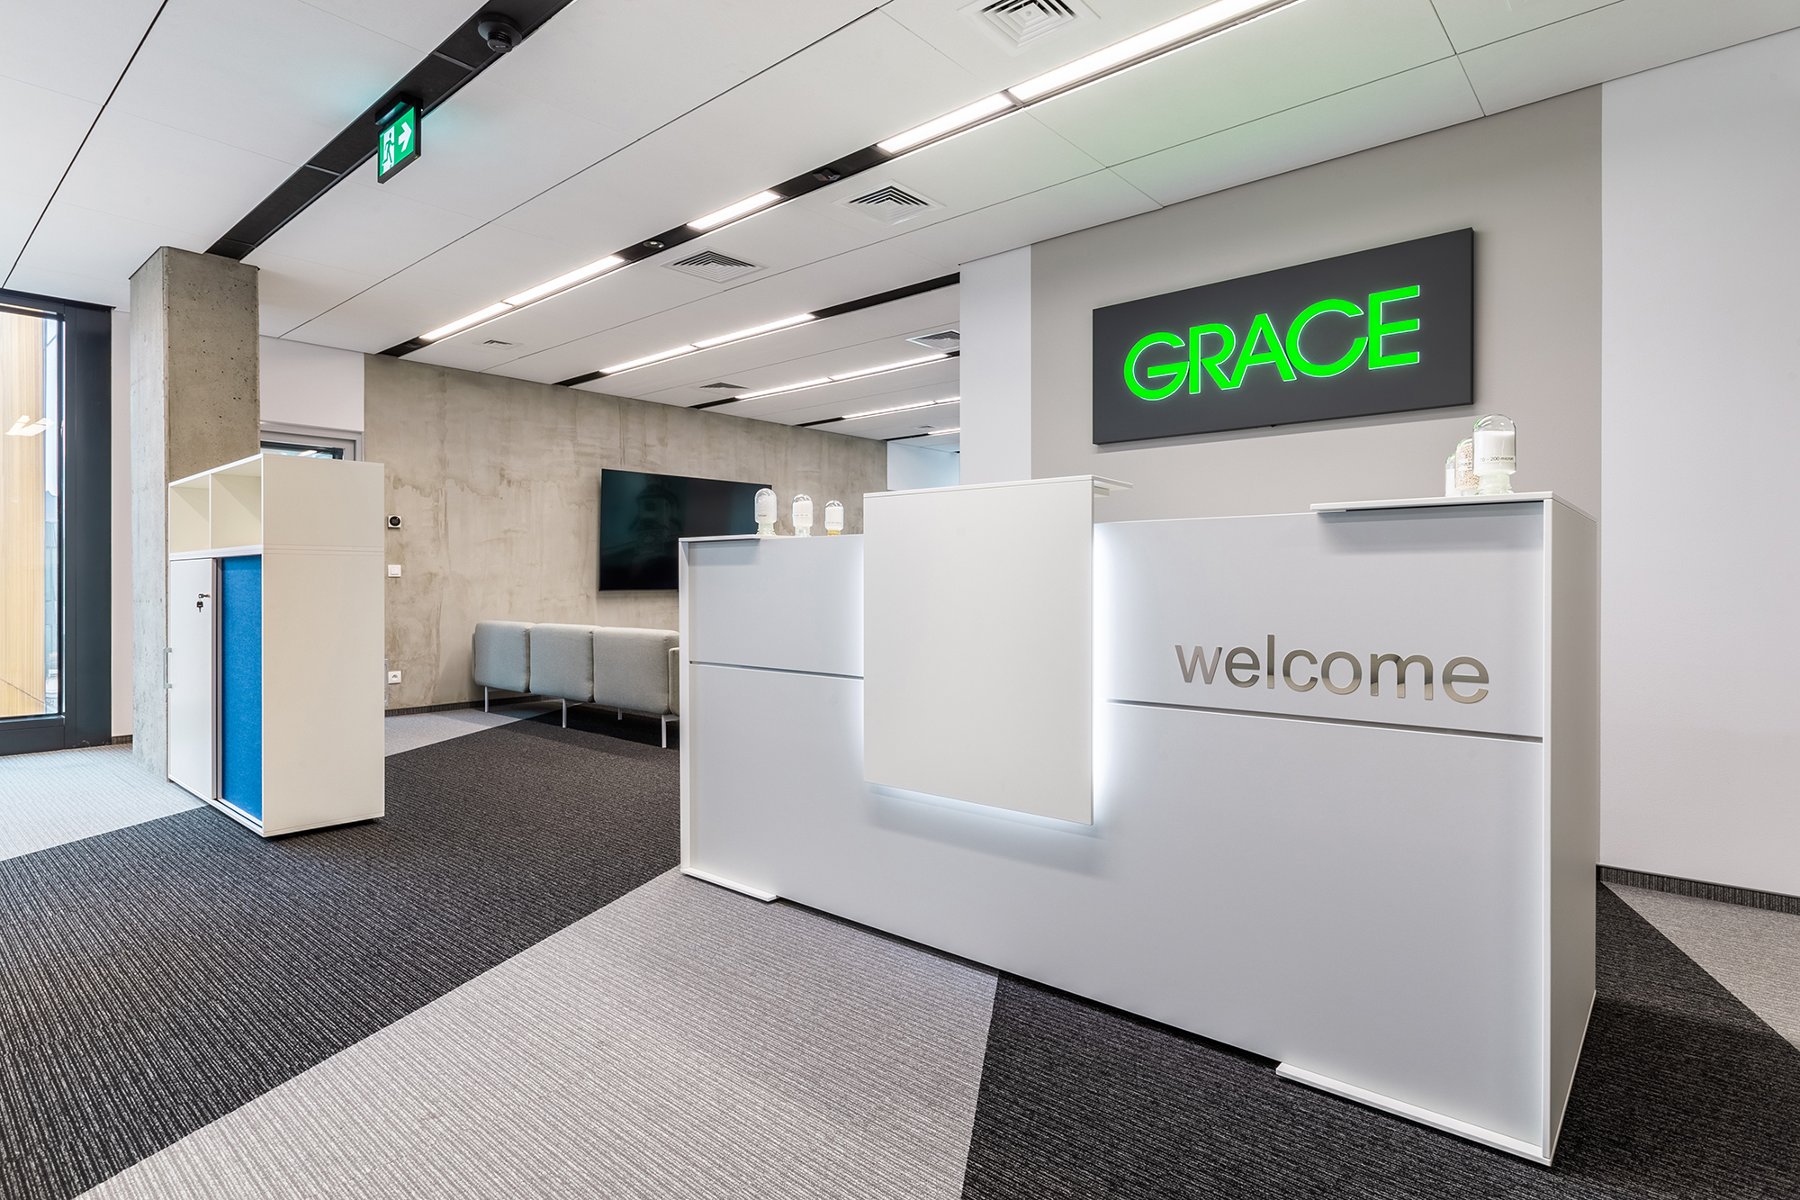 Zdjęcie przedstawia białą ścianę, widnieje na niej logo firmy Grace. Przed nim znajduje się biała recepcja z napisem "Welcome". - grafika artykułu